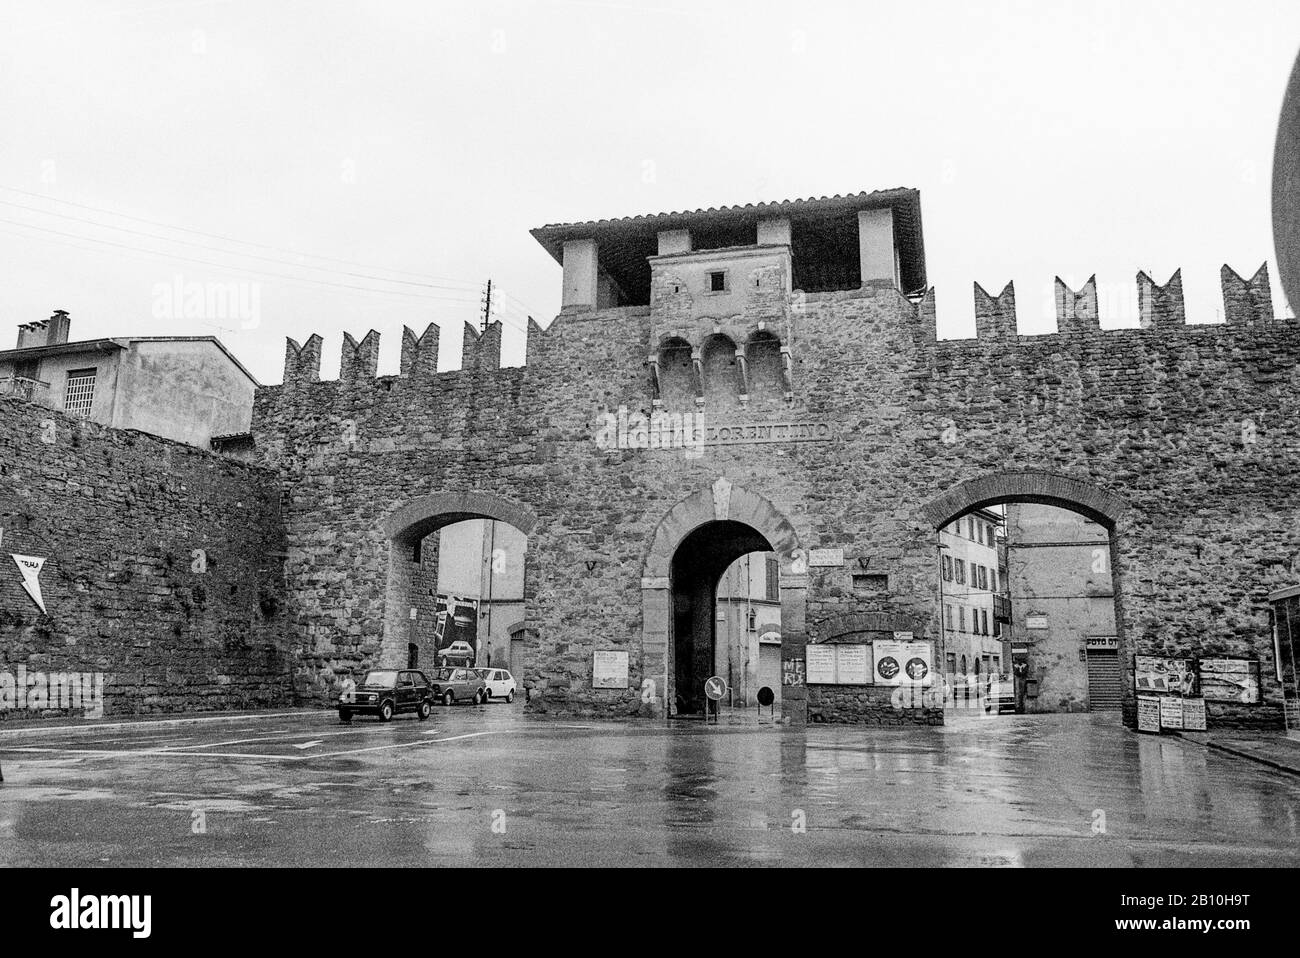 1981 - Arezzo, Porta San Lorentino: Portail de la ville dans les murs médiévaux de la ville toscane, avec des remparts et des portes latérales Banque D'Images